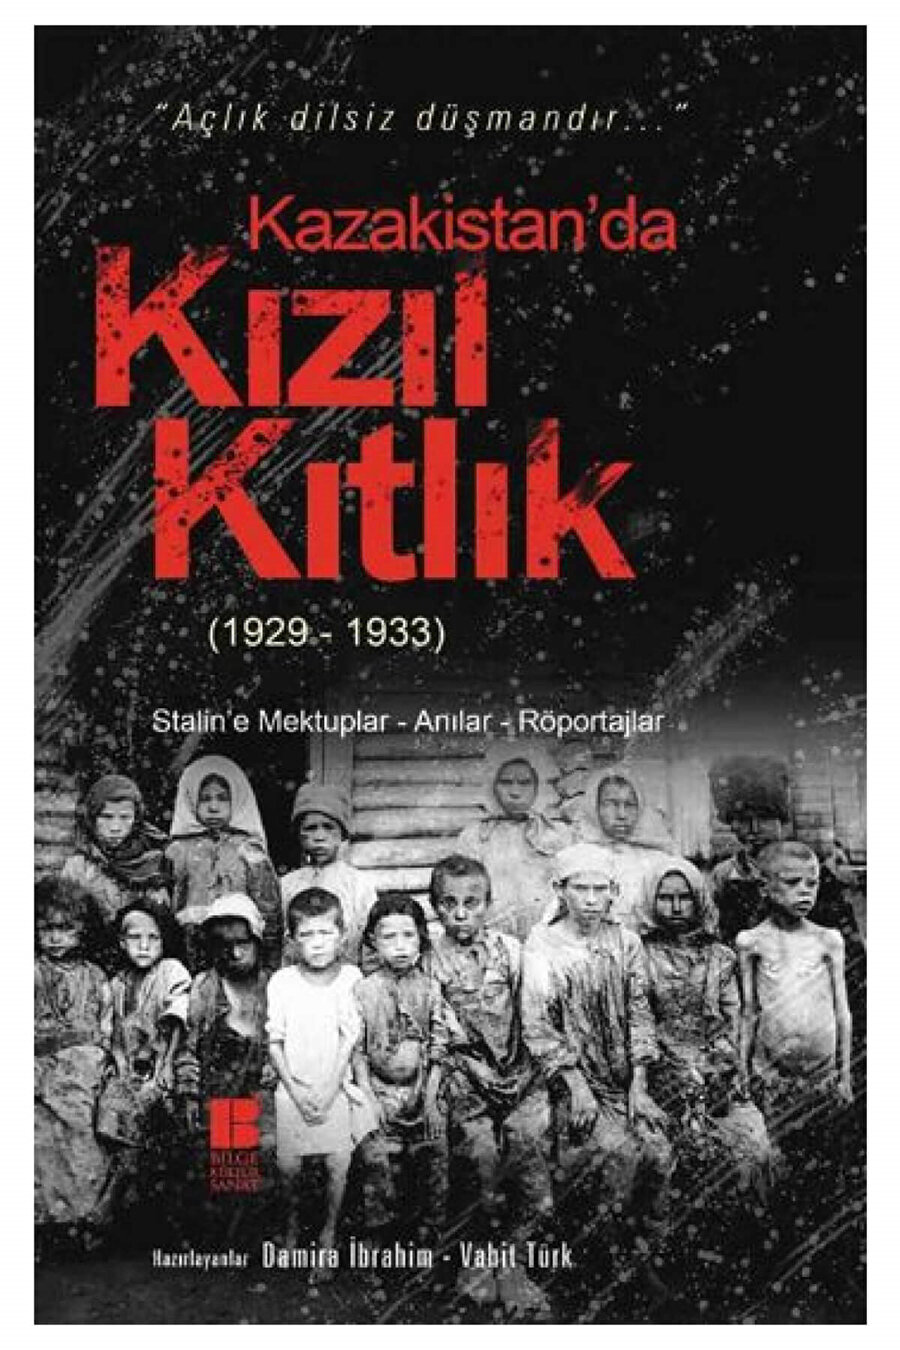 Damira İbrahim ve Vahit Türk’ün derlediği “Kazakistan’da Kızıl Kıtlık (1929-1933)” kitabı.